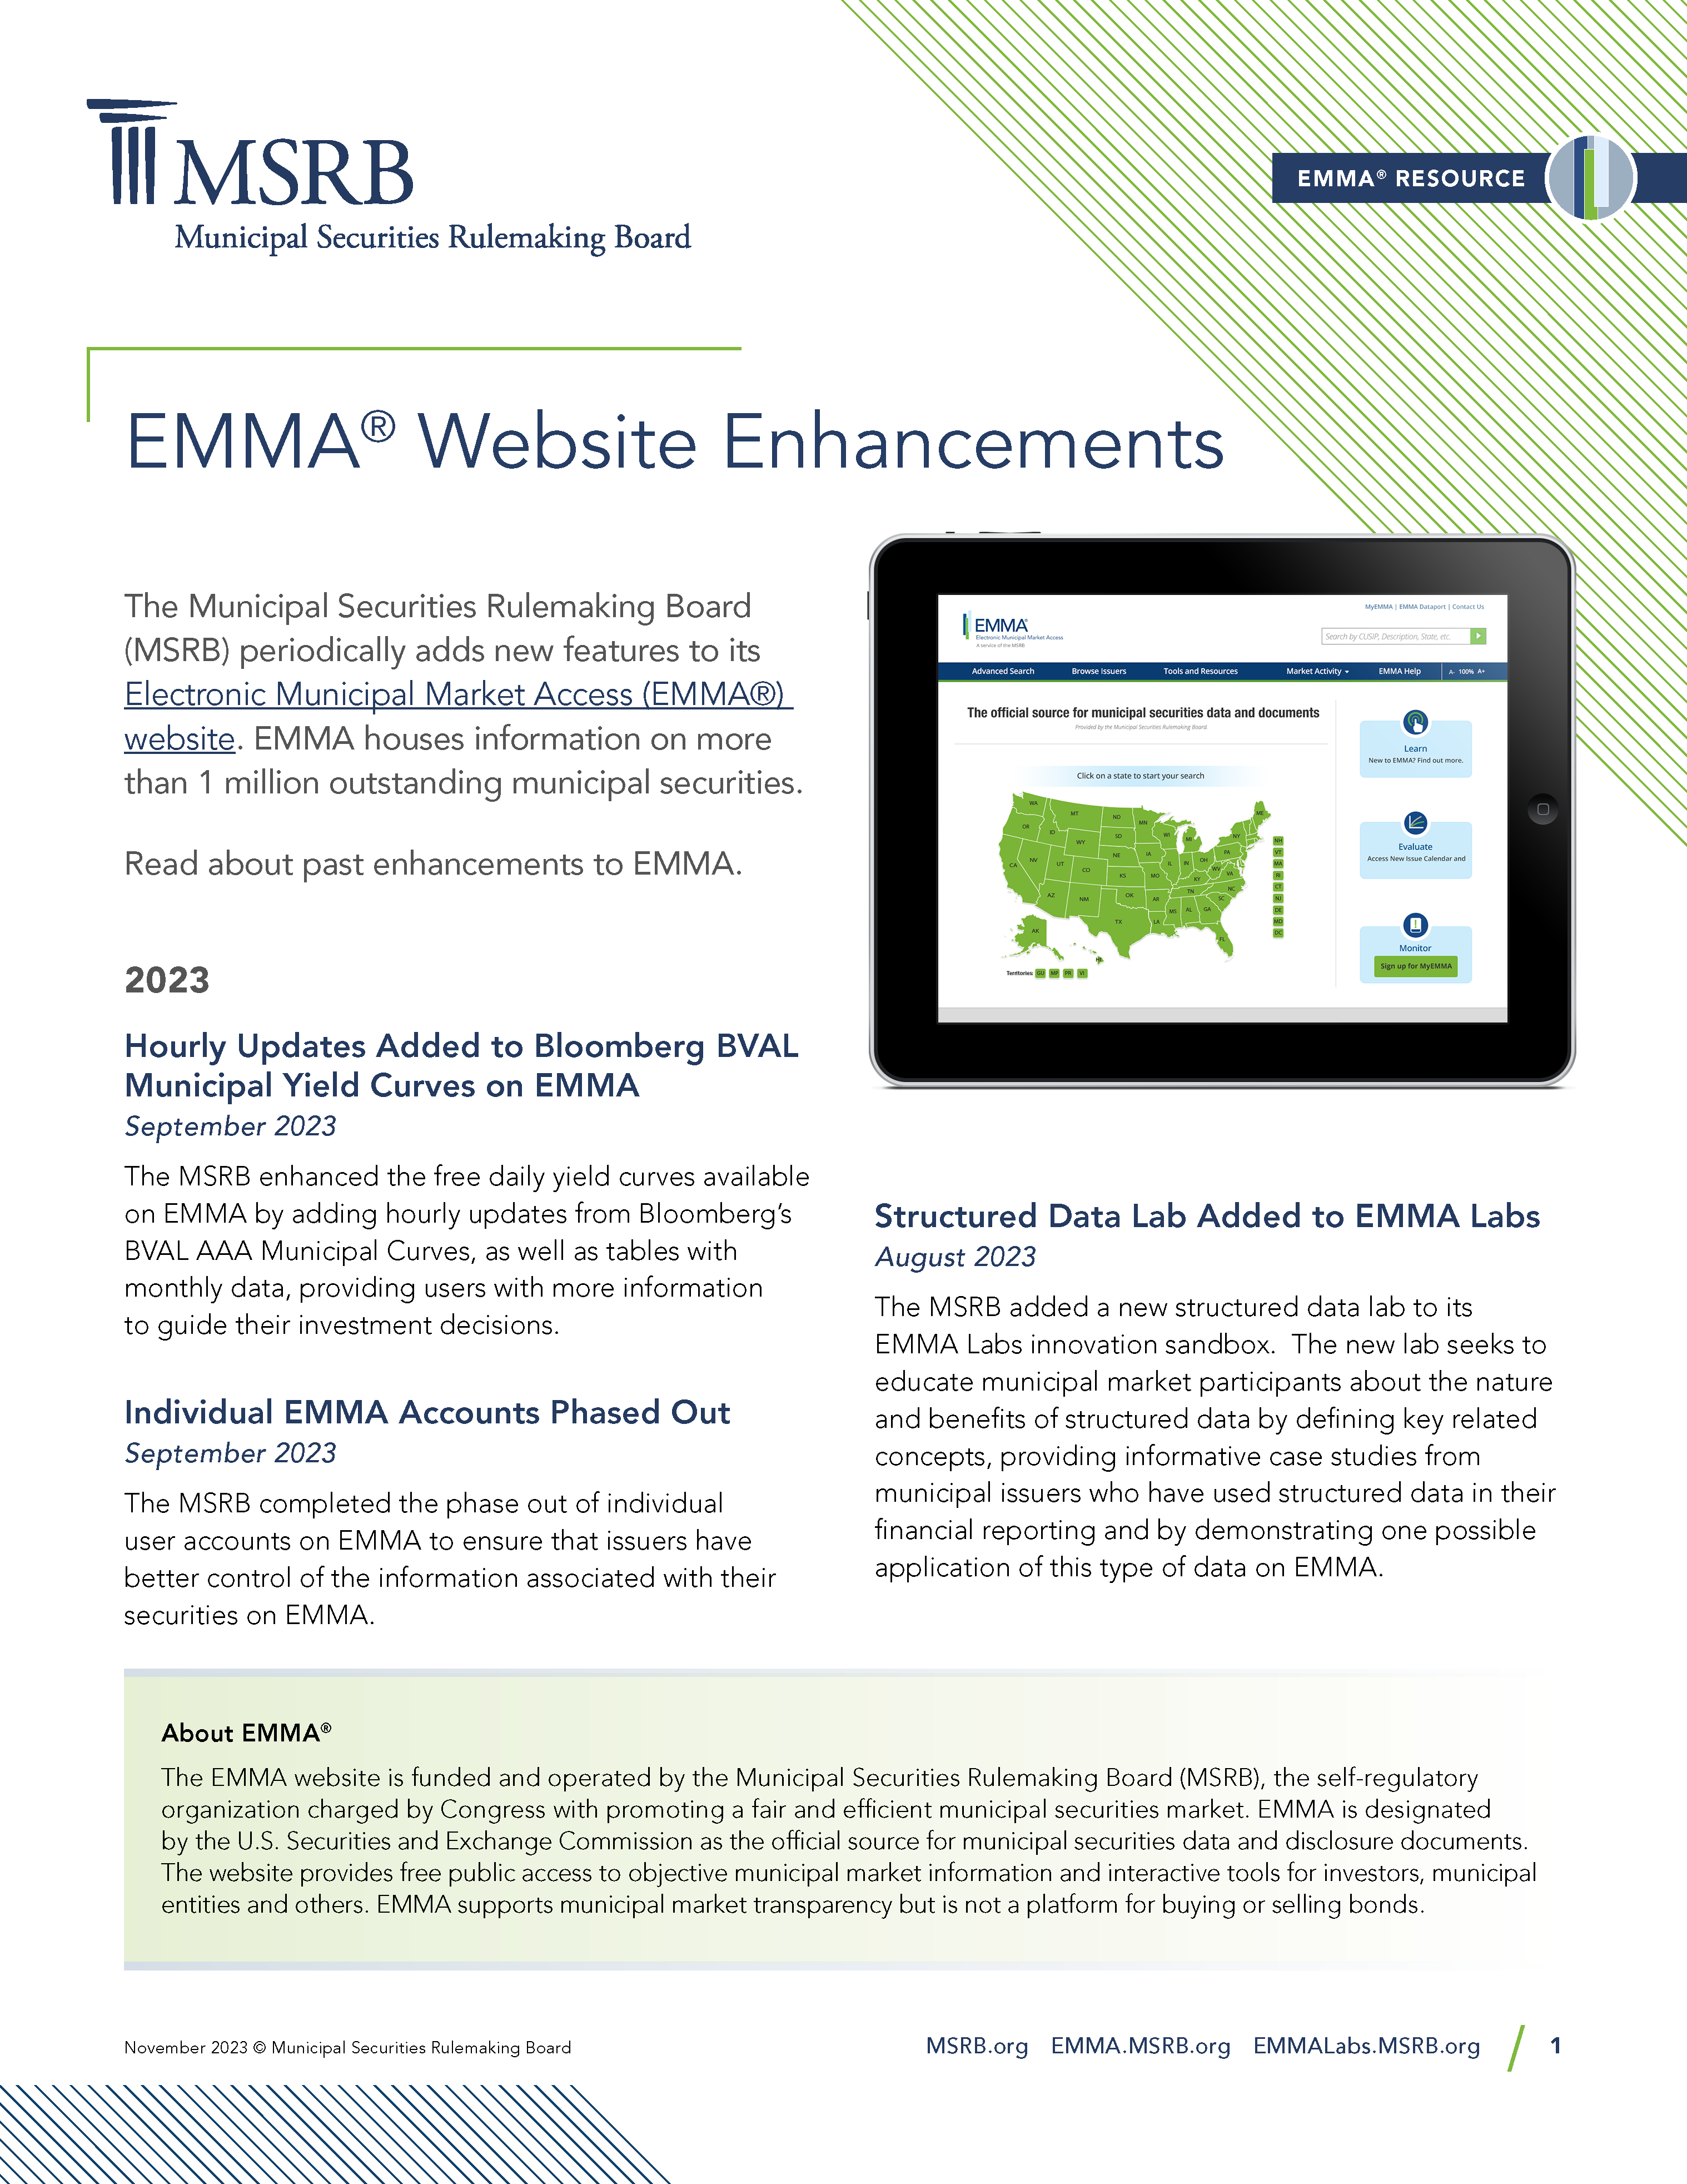 EMMA Enhancement thumbnail